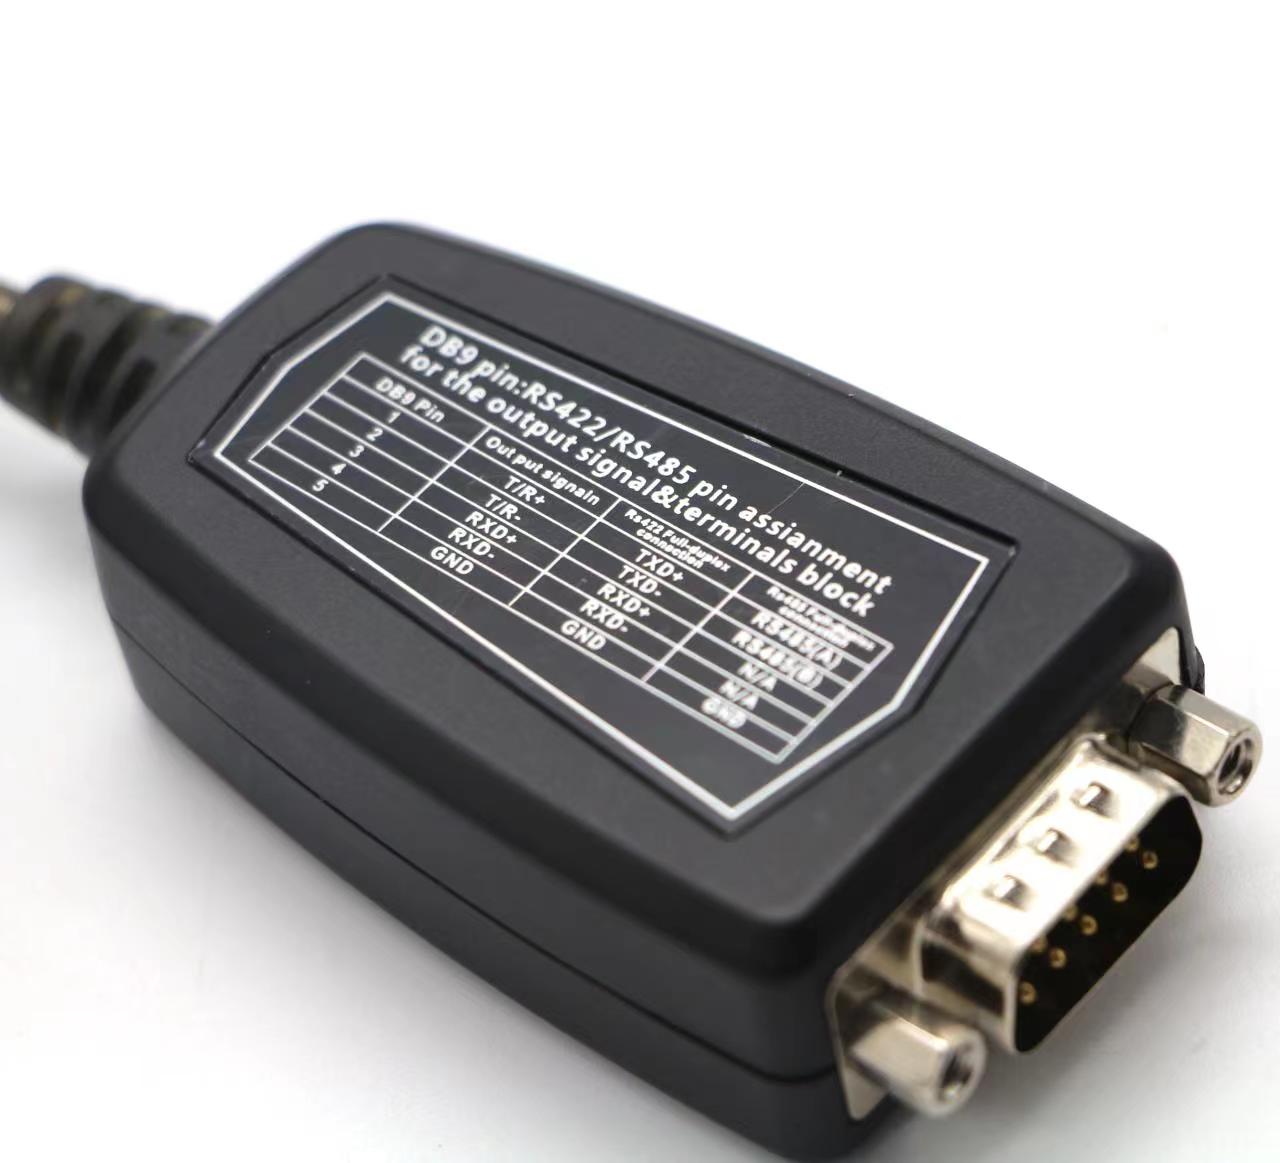 Καλό συμβατό RS232 chipset db9 σε καλώδιο οδηγού USB για μητρώο ταμίας, μόντεμ,